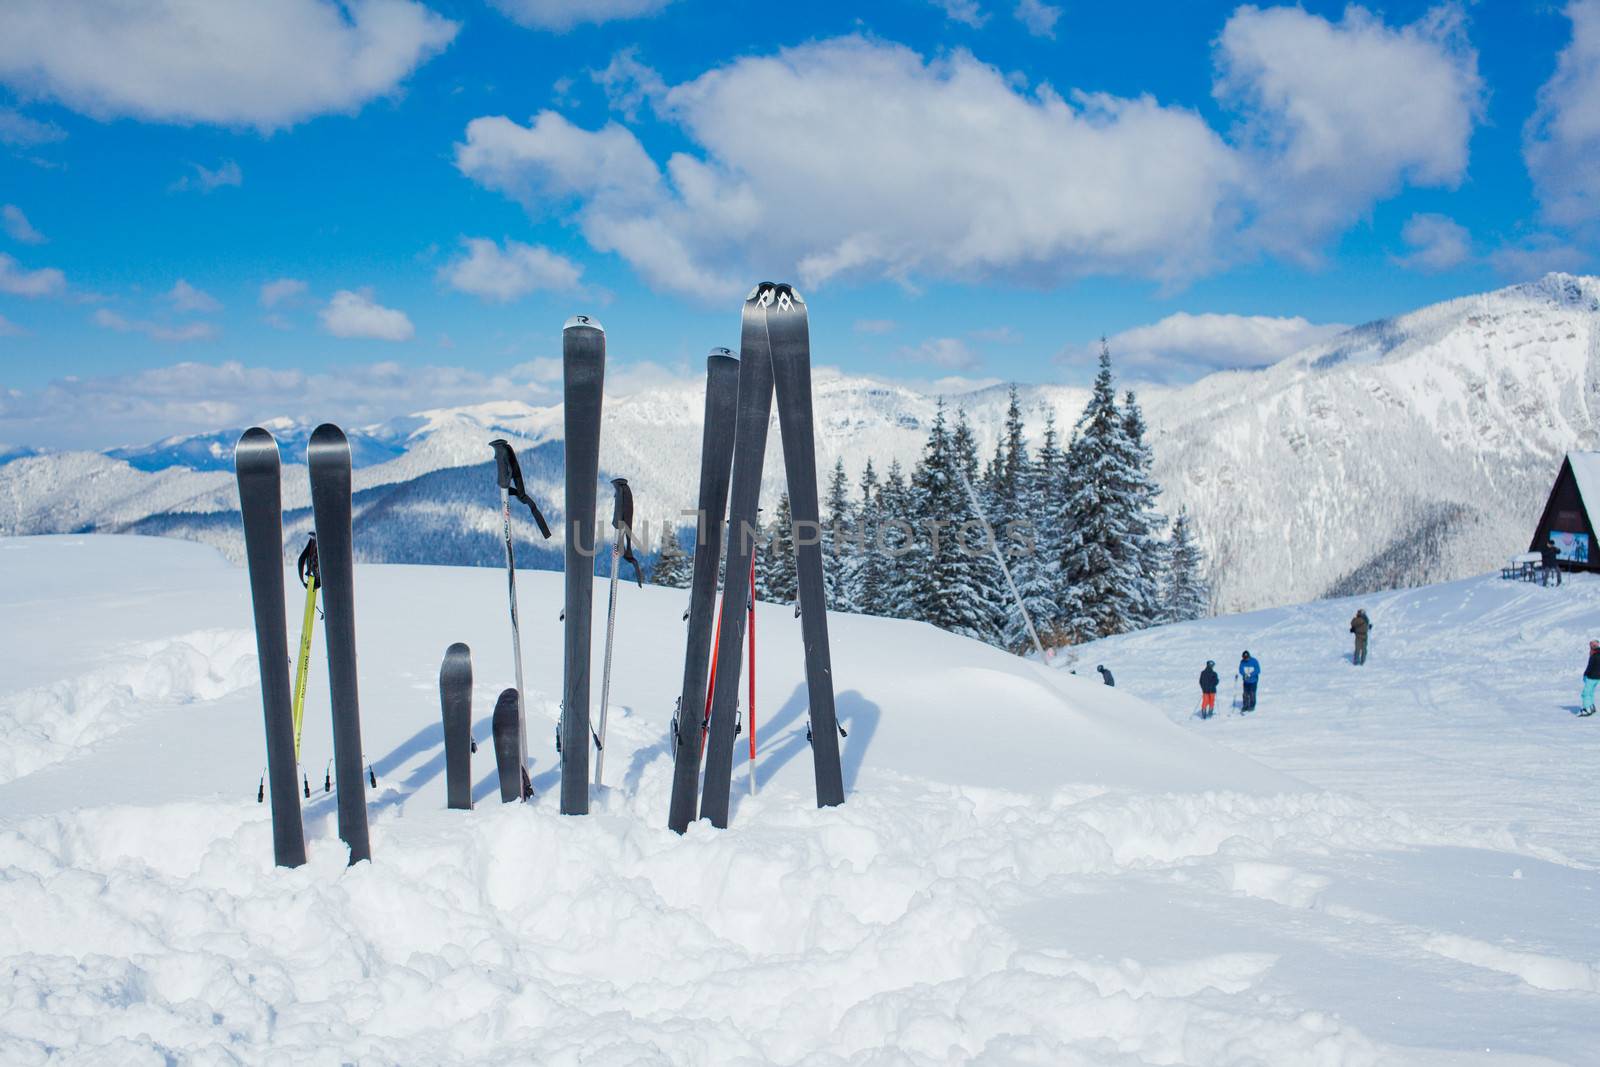 A family set of skis, ski poles in the snow mountains.